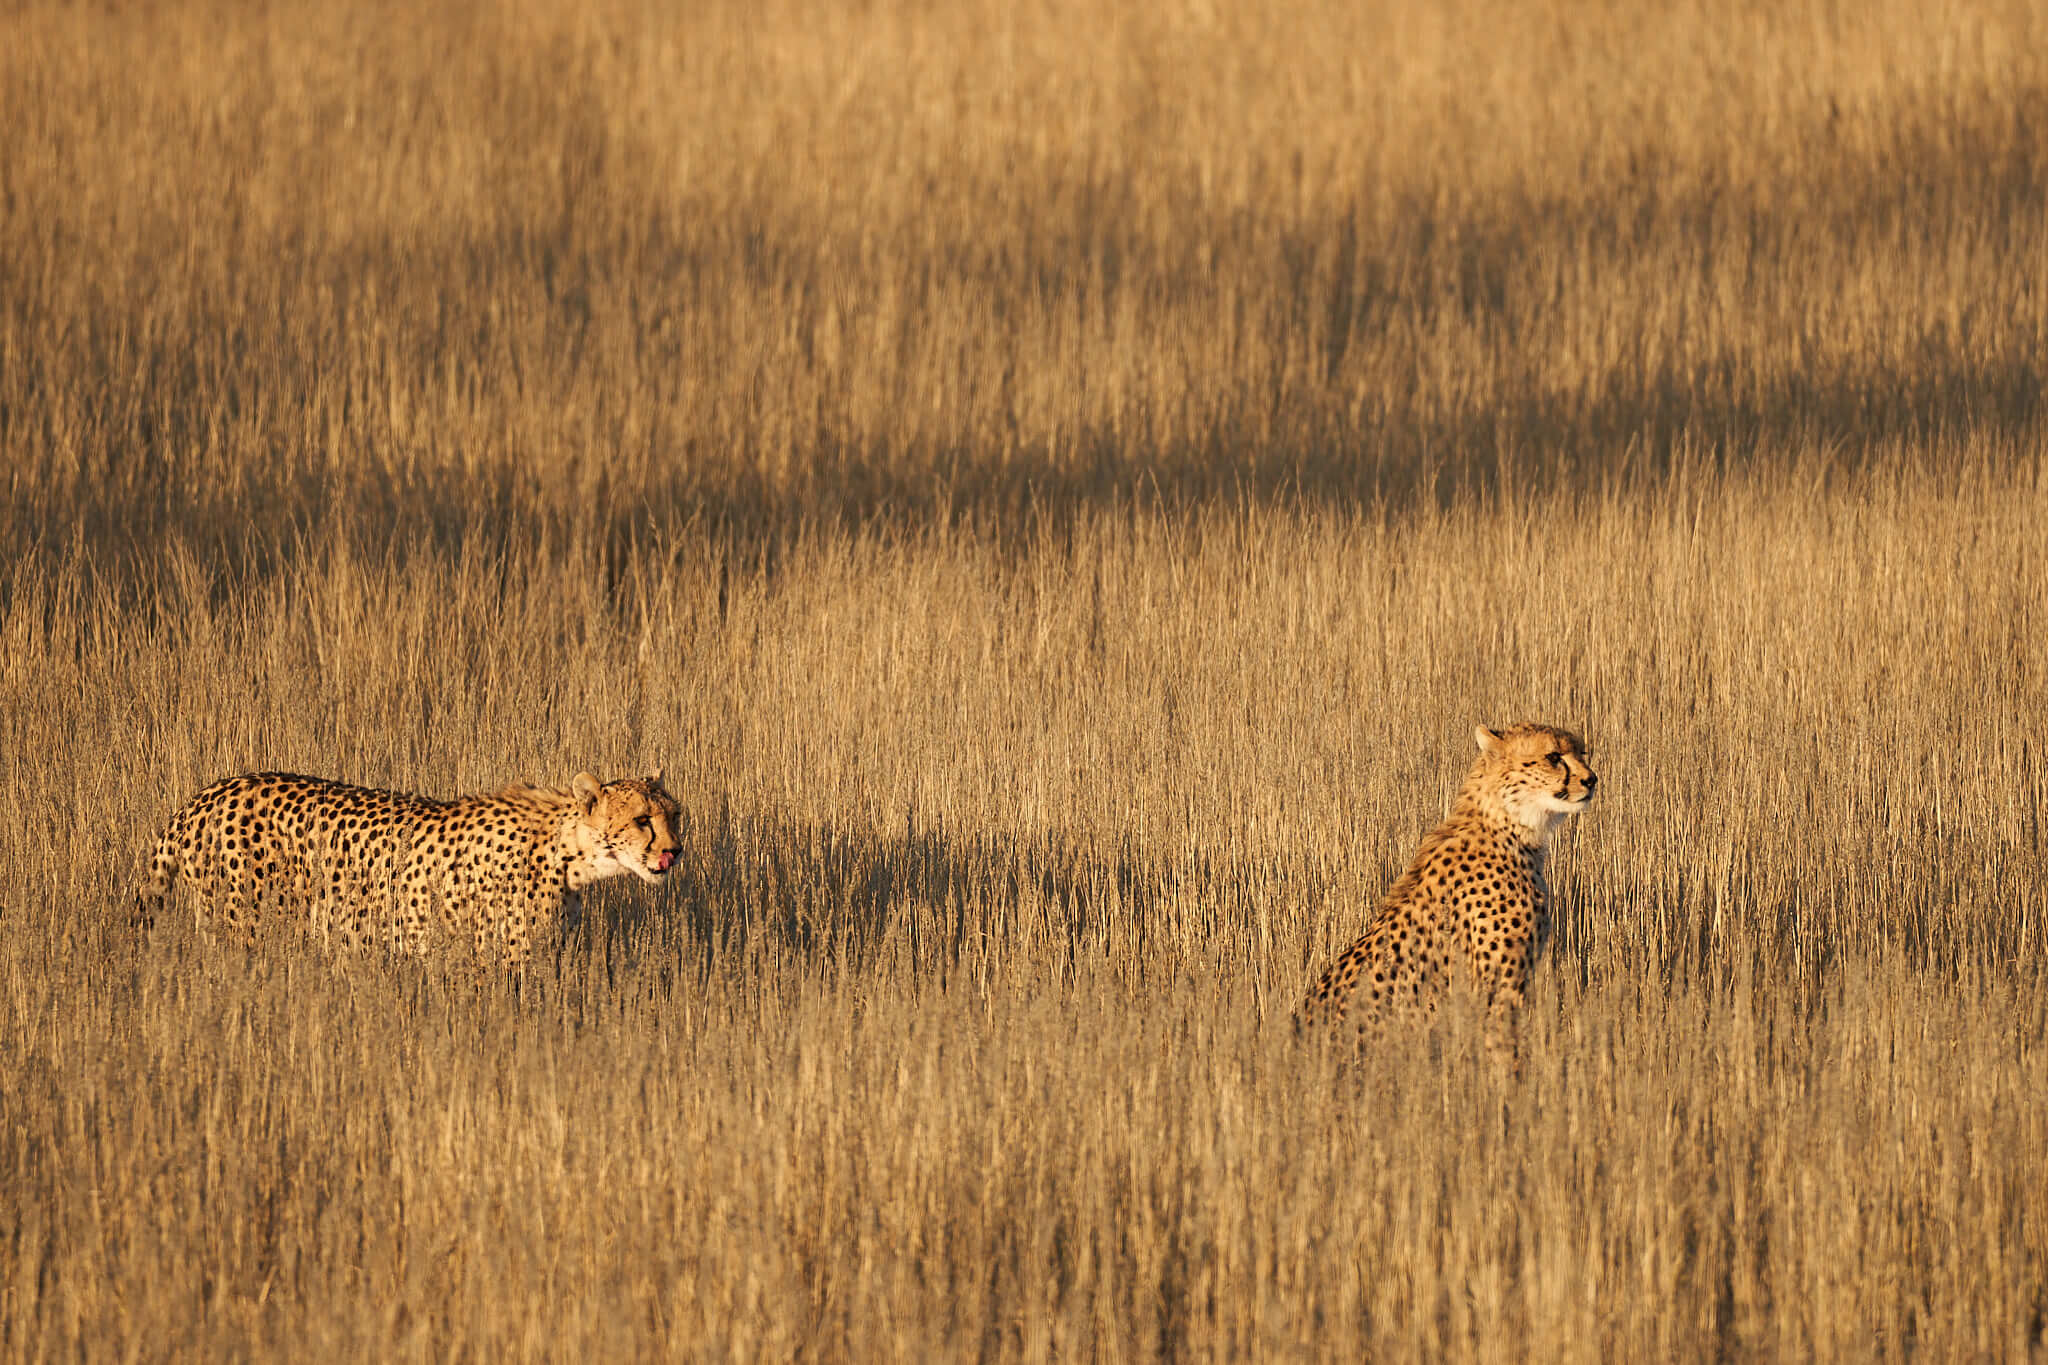 Das Bild zeigt zwei Geparden im hohen Gras